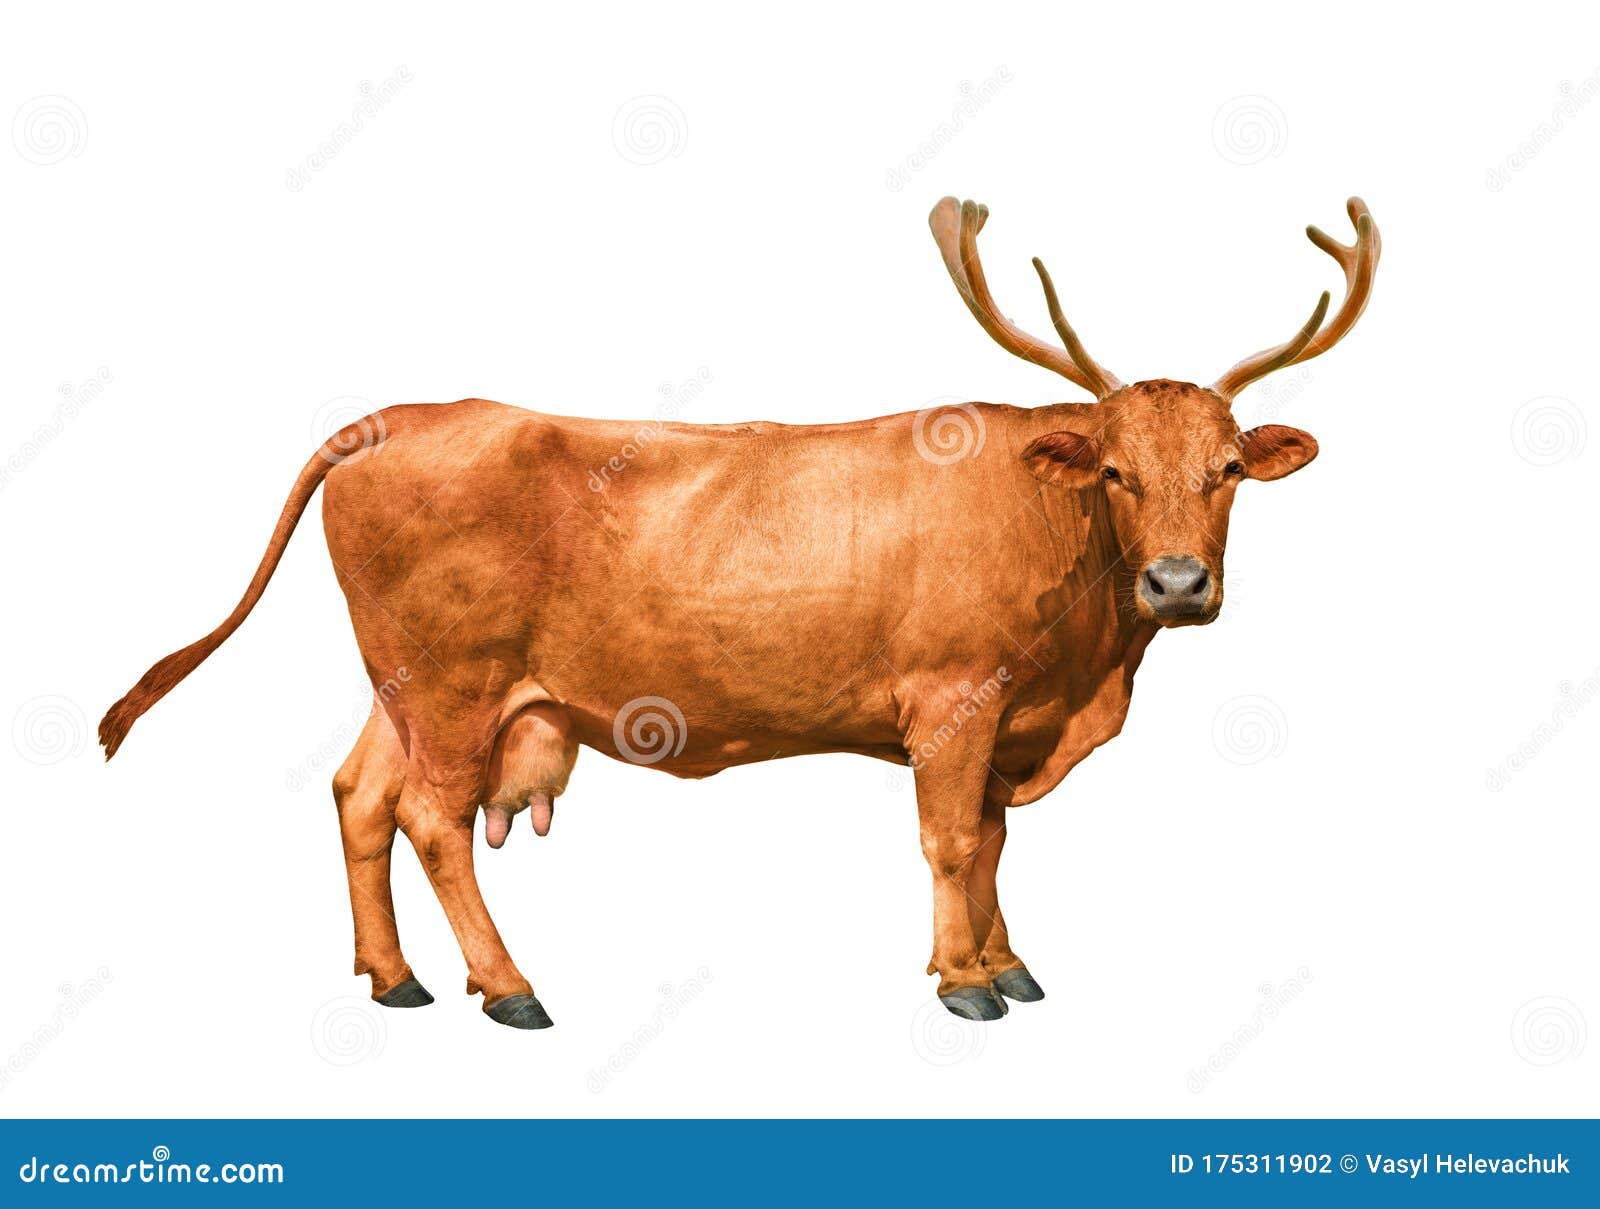 cow-deer-horns-white-background-175311902.jpg